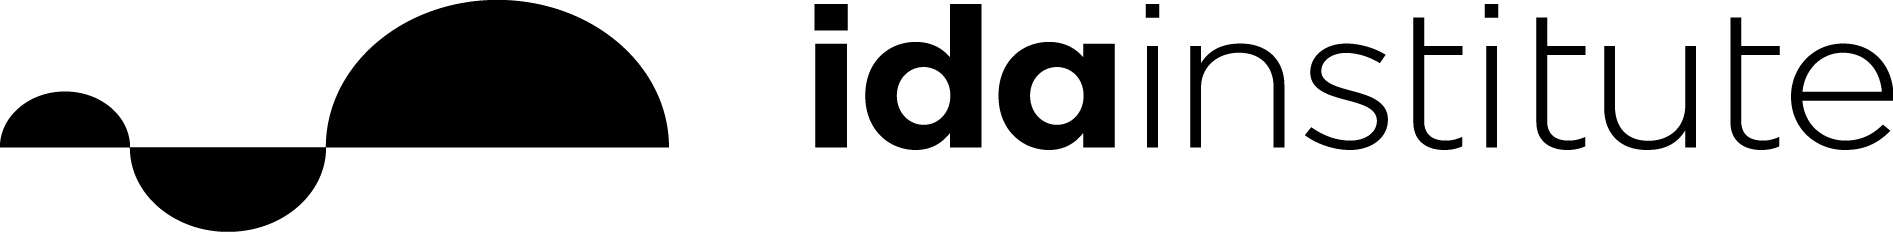 Ida institute logo